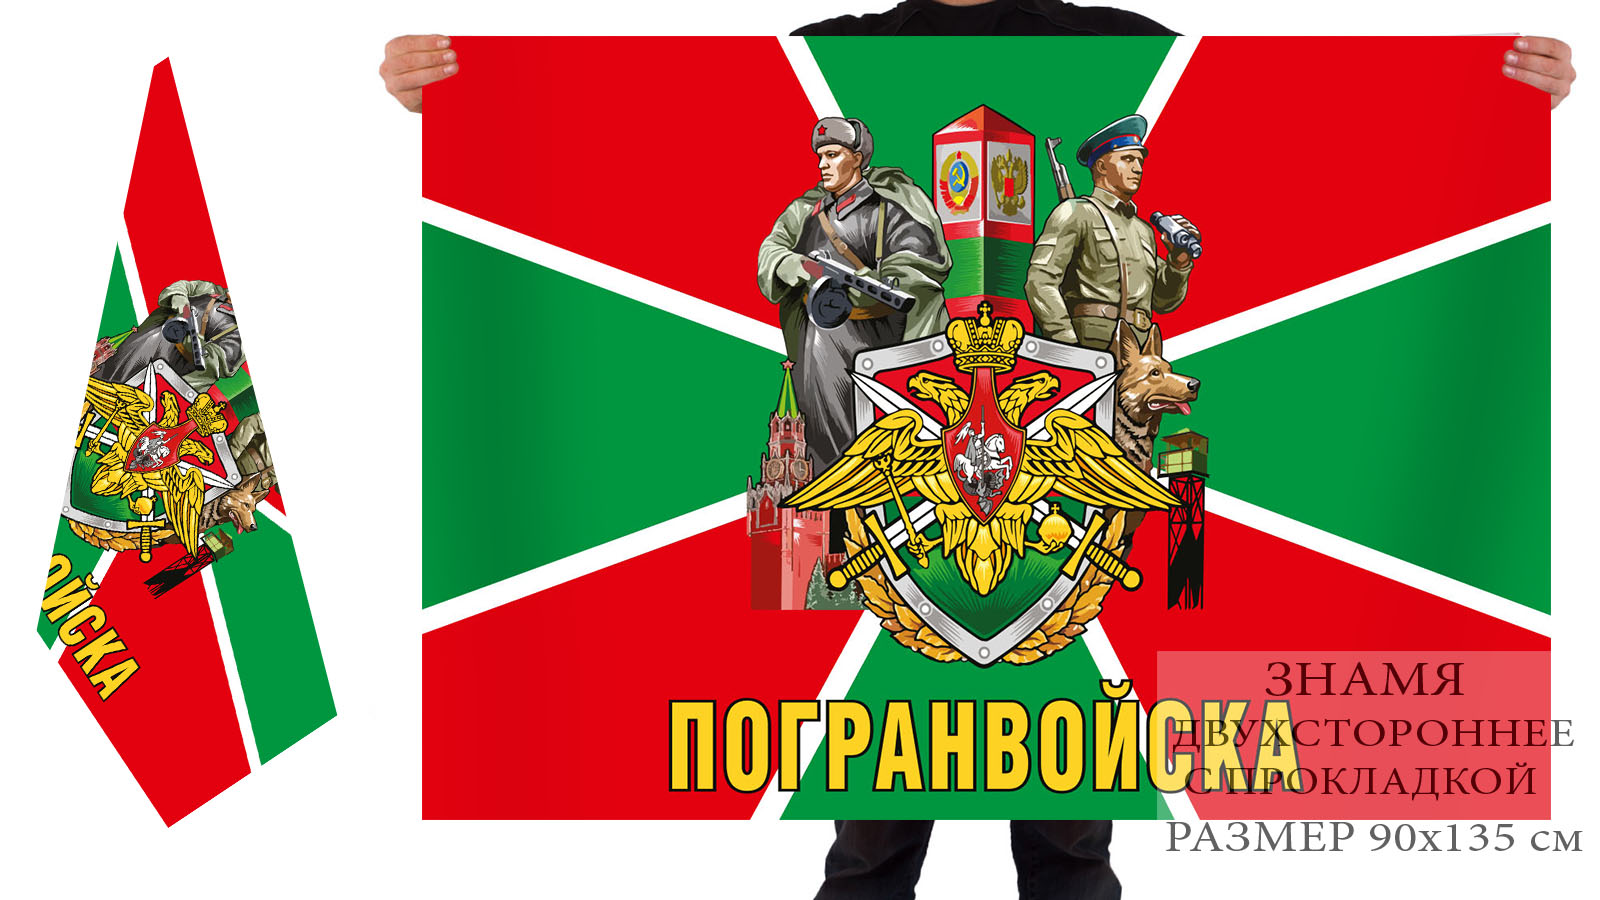 Двусторонний флаг Пограничных войск России